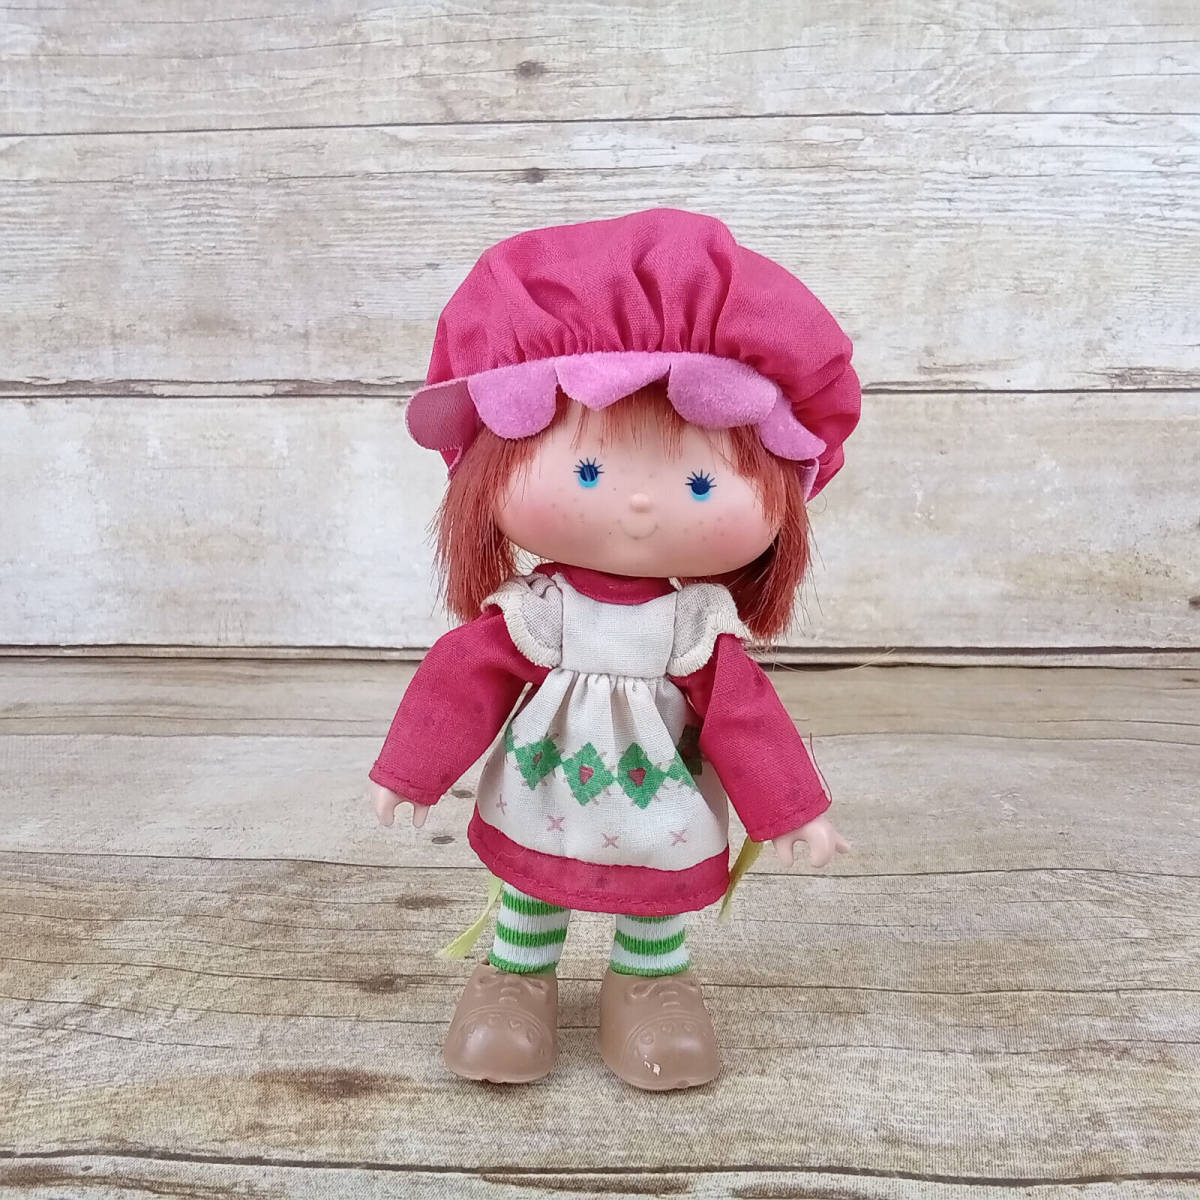 Vintage 1979 Original Strawberry Shortcake 5.5" Doll with Cherry Cuddler Hat 海外 即決